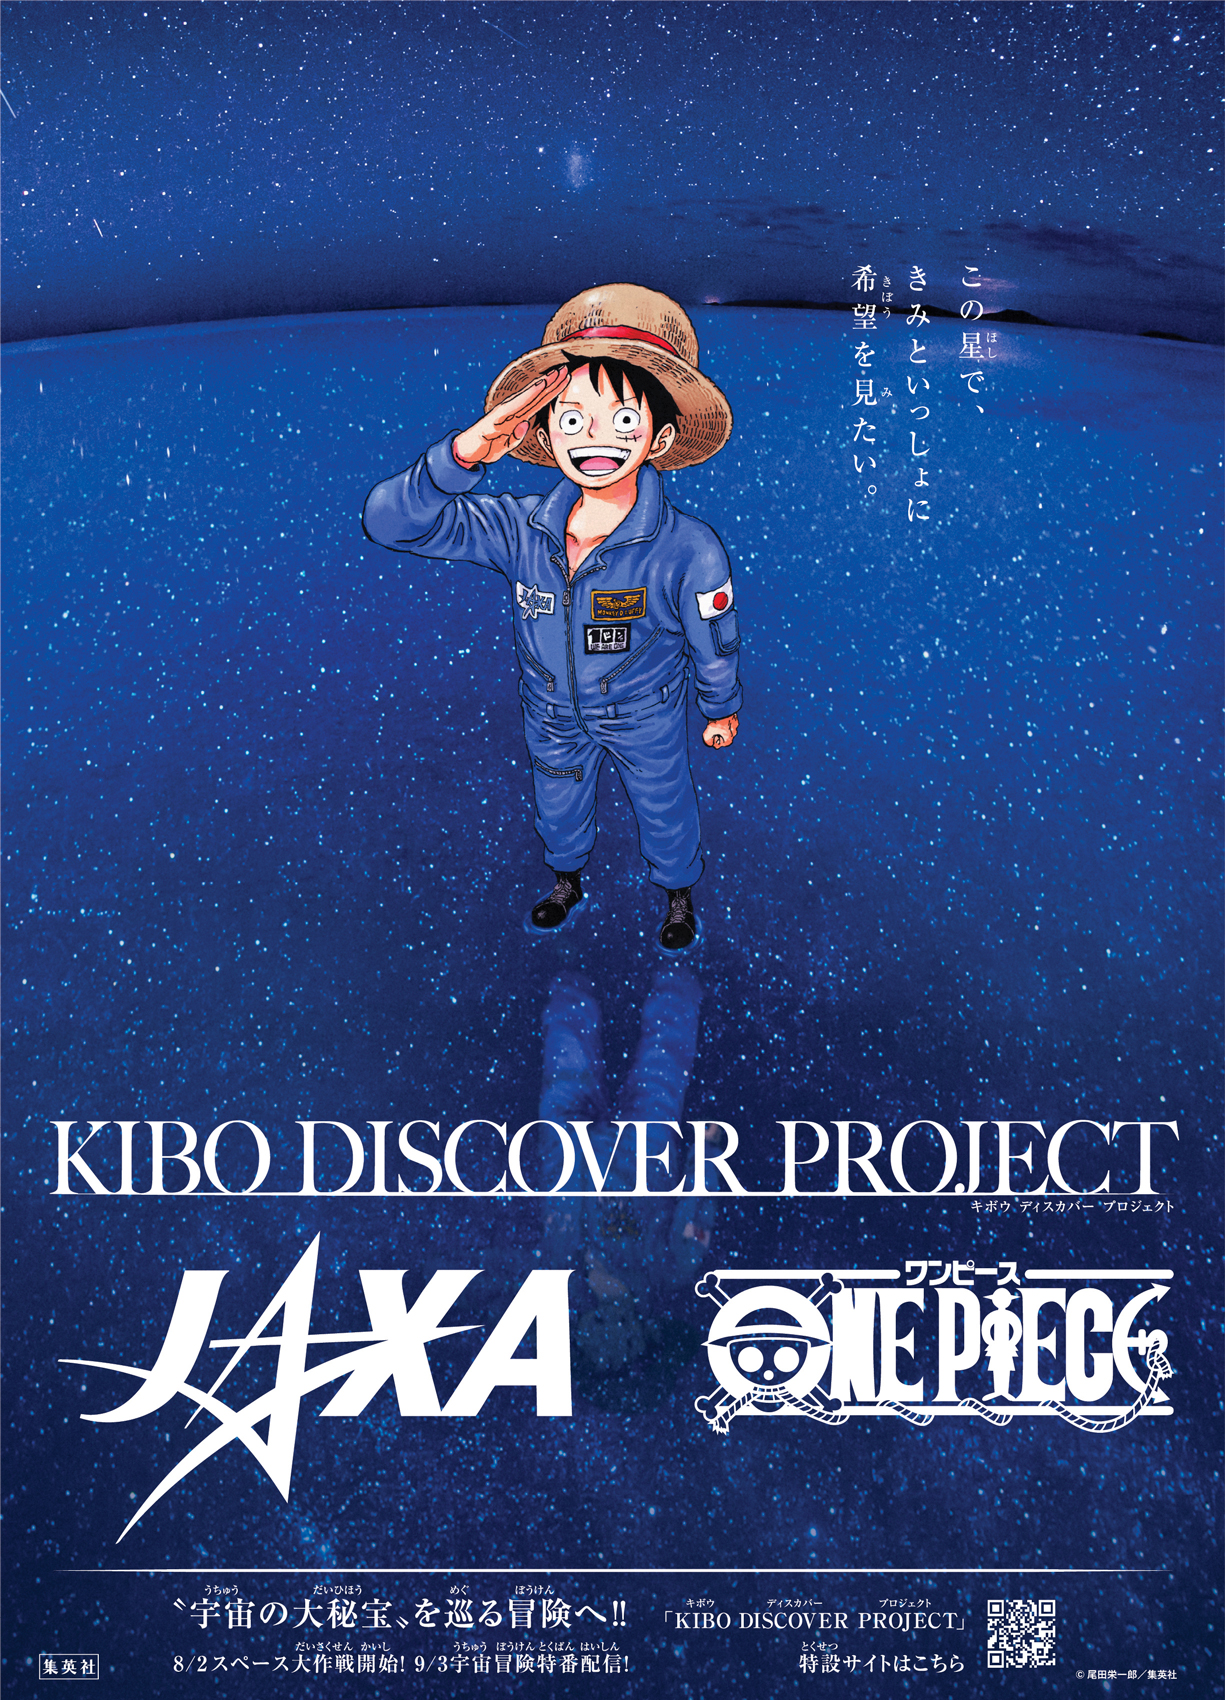 この星で きみといっしょに希望をみたい Jaxa One Piece Kibo宇宙放送局 Kibo Discover Project 始動 株式会社バスキュールのプレスリリース